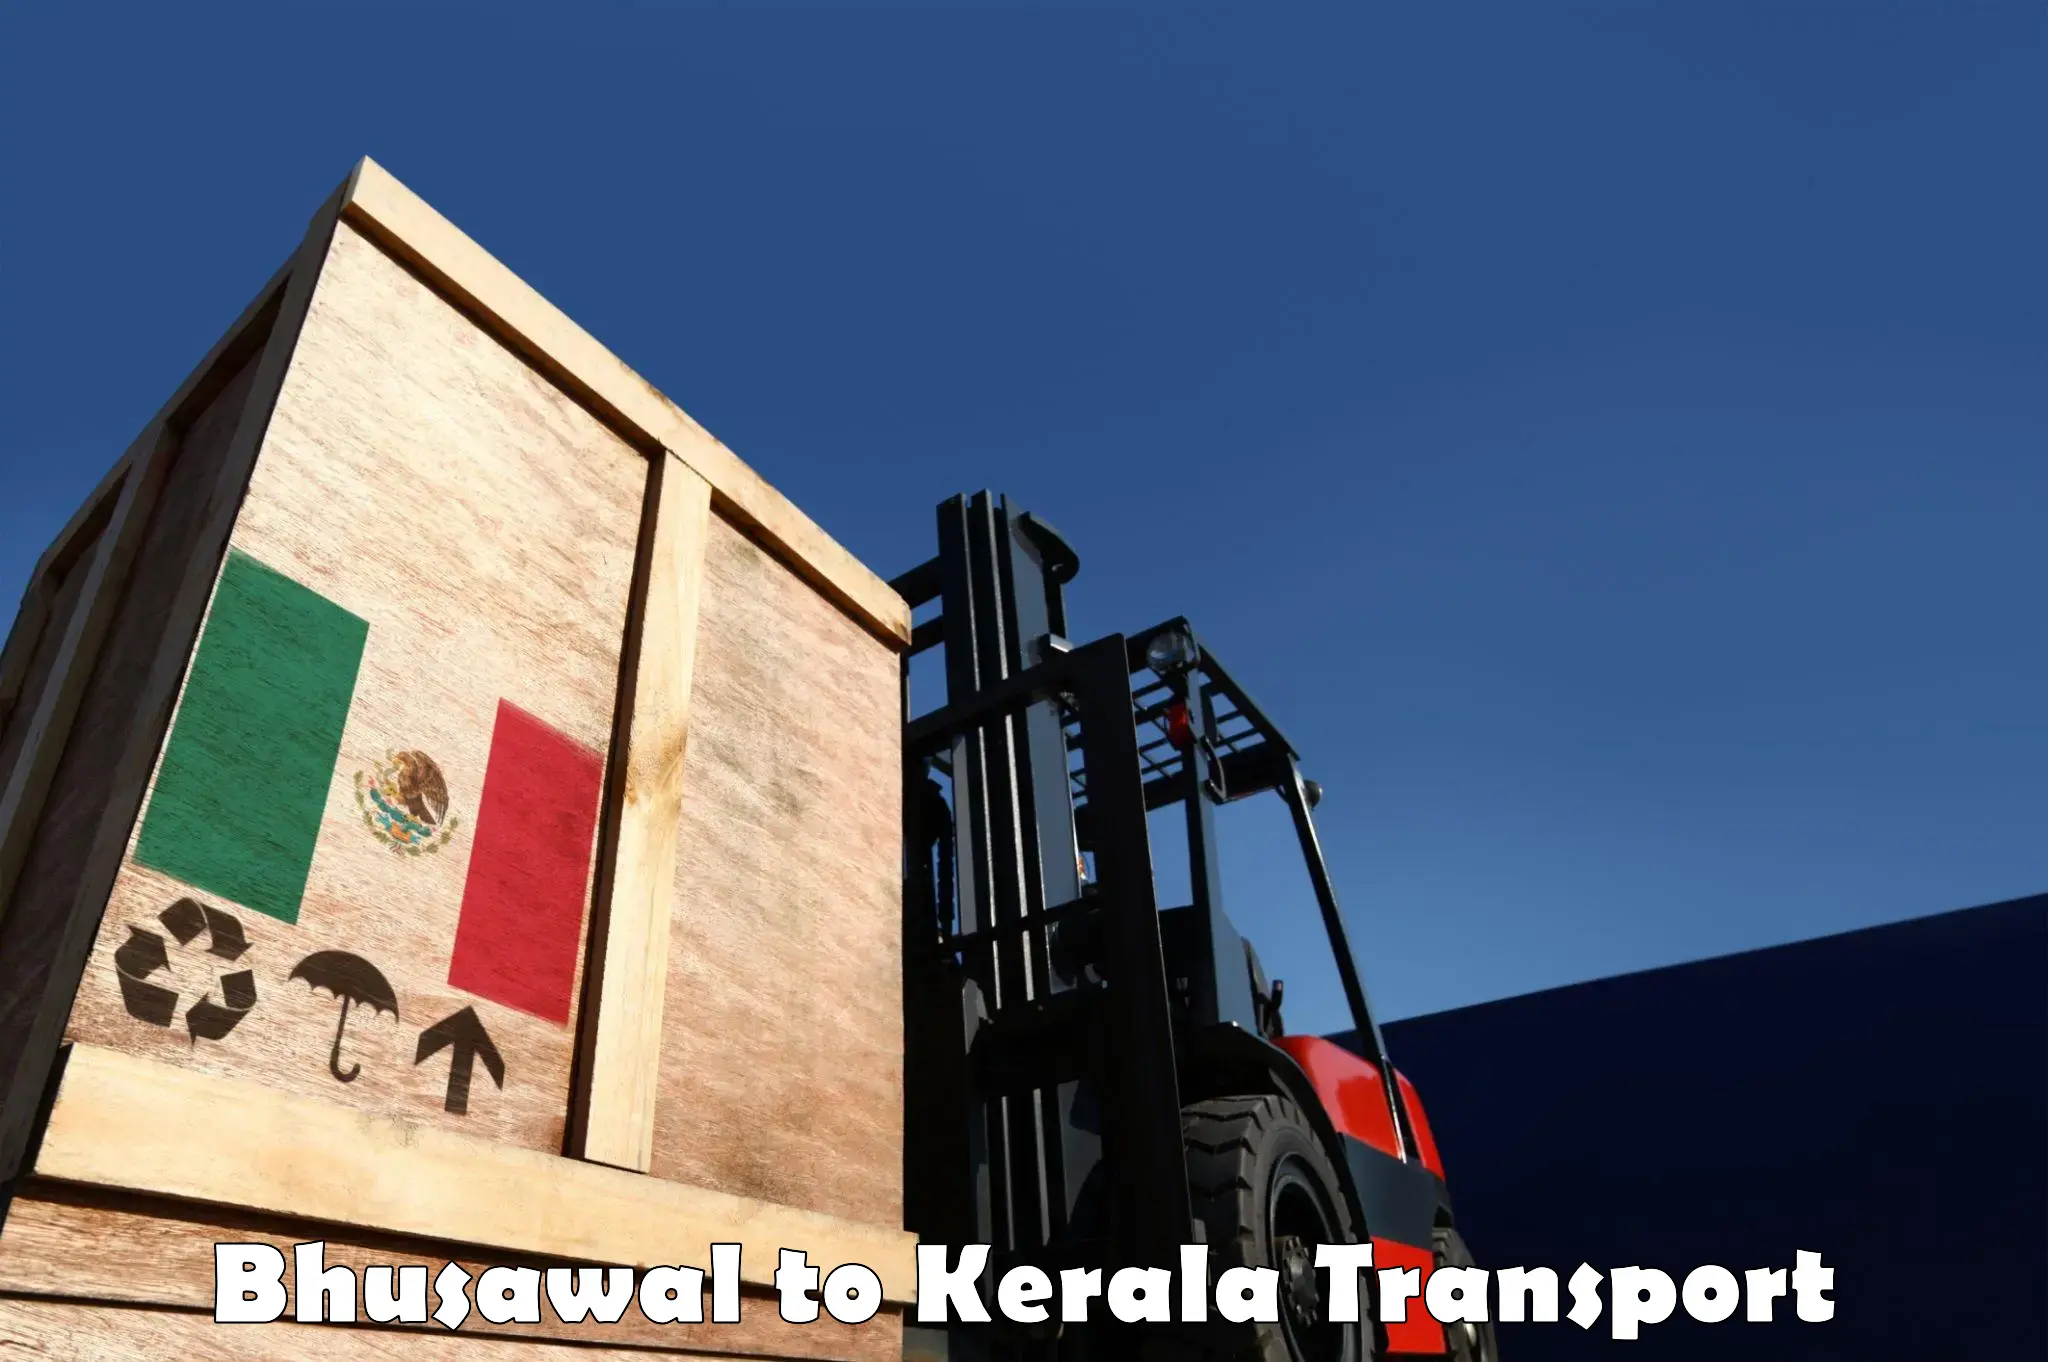 Shipping services Bhusawal to Kattappana